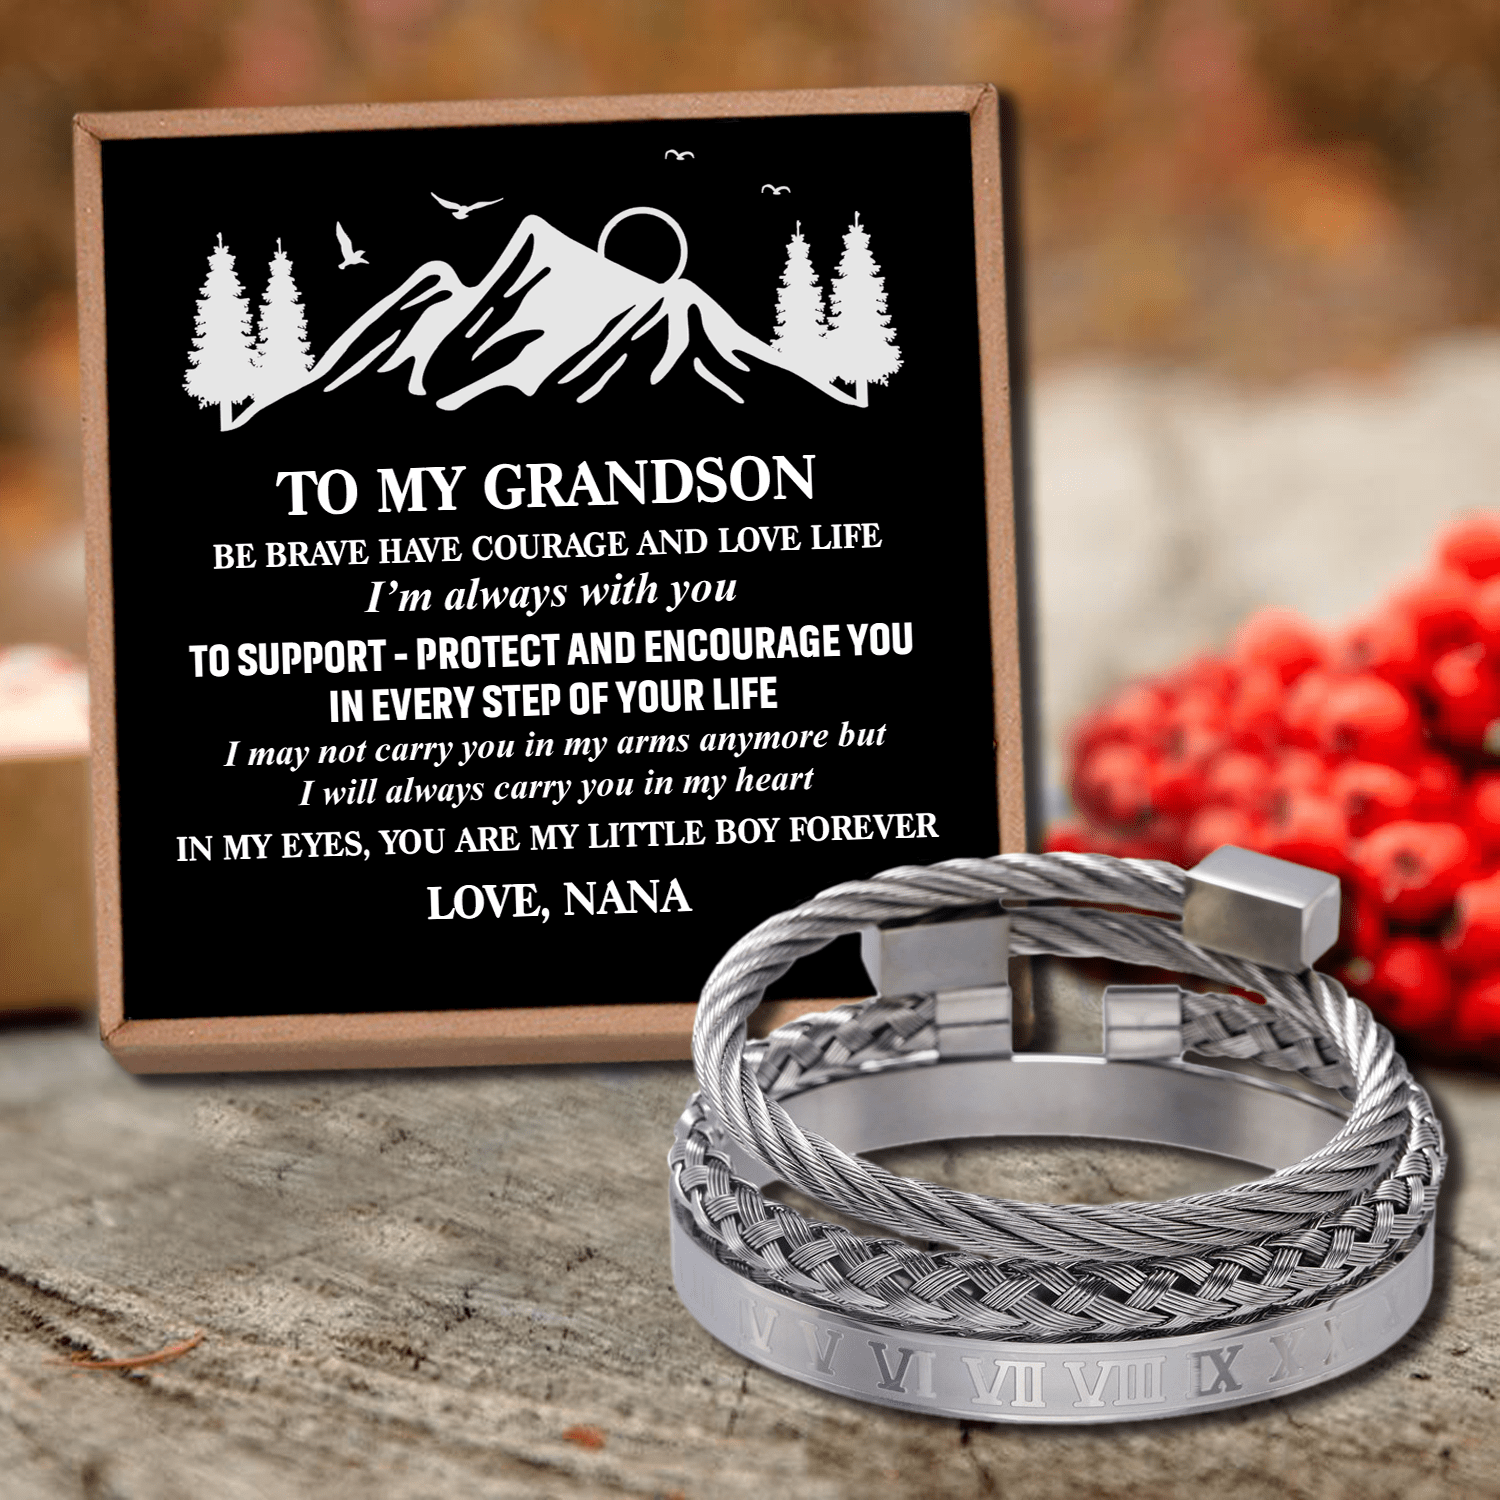 Bracelets Nana To Grandson - My Little Boy Forever Roman Numeral Bracelet Set Silver GiveMe-Gifts